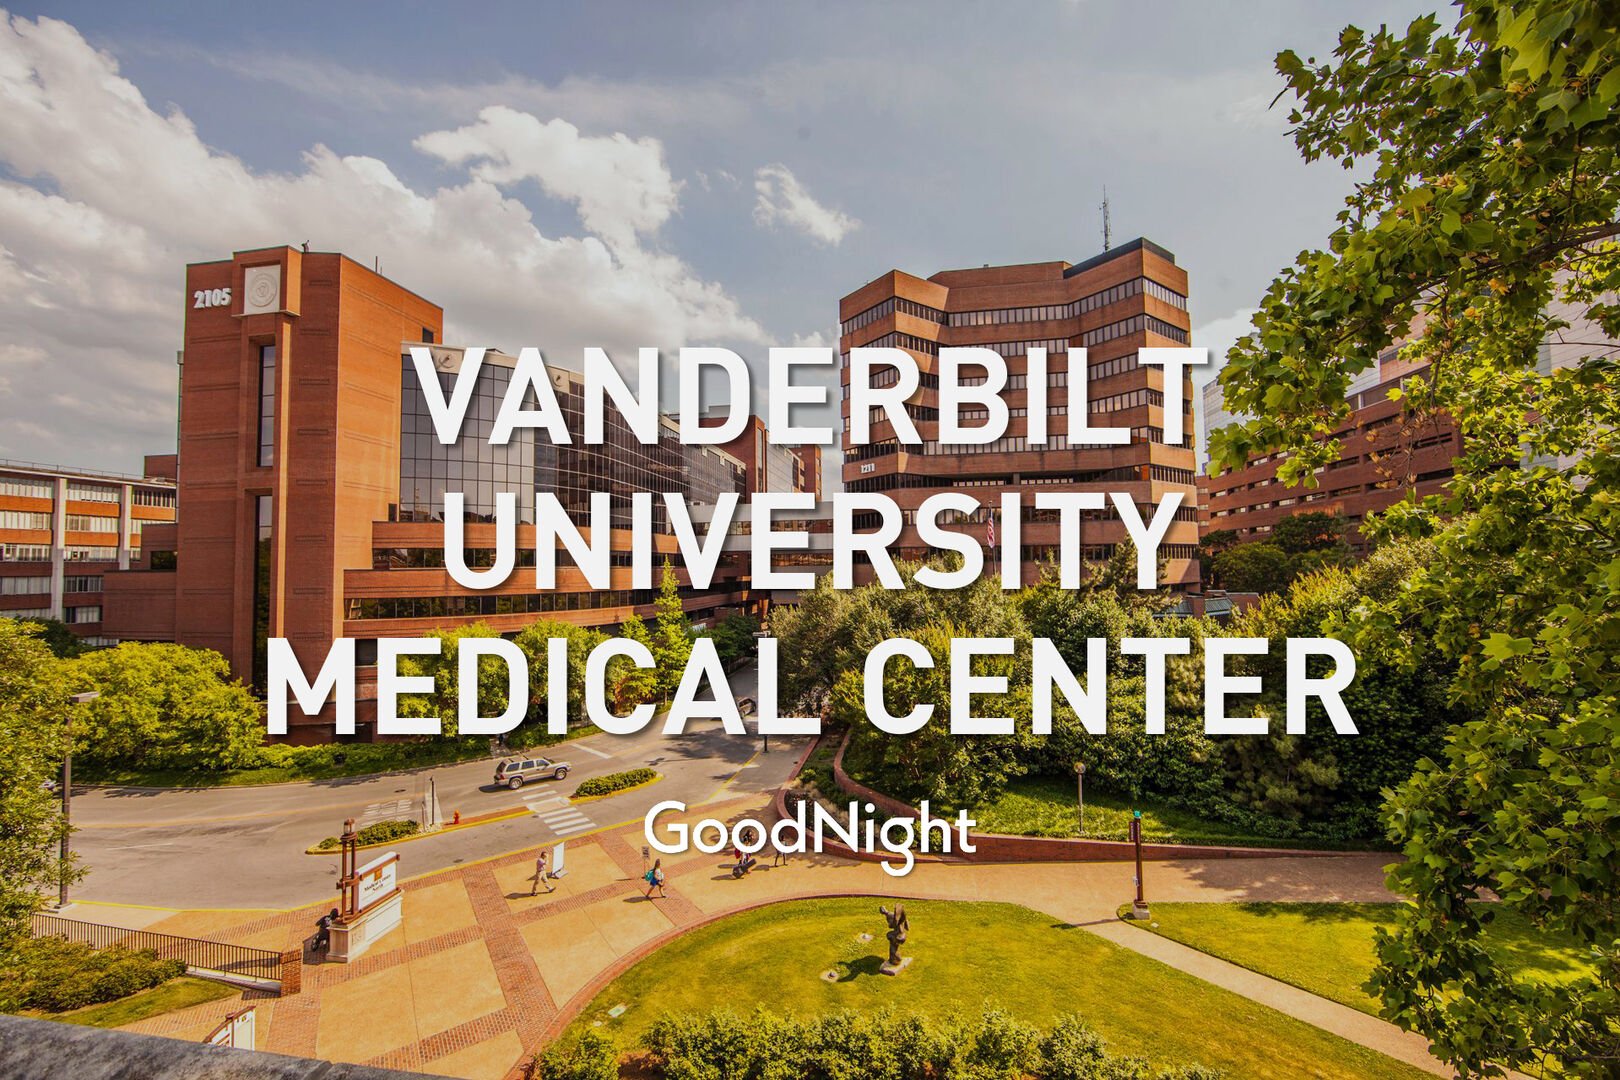 8 mins: Vanderbilt University Medical Center